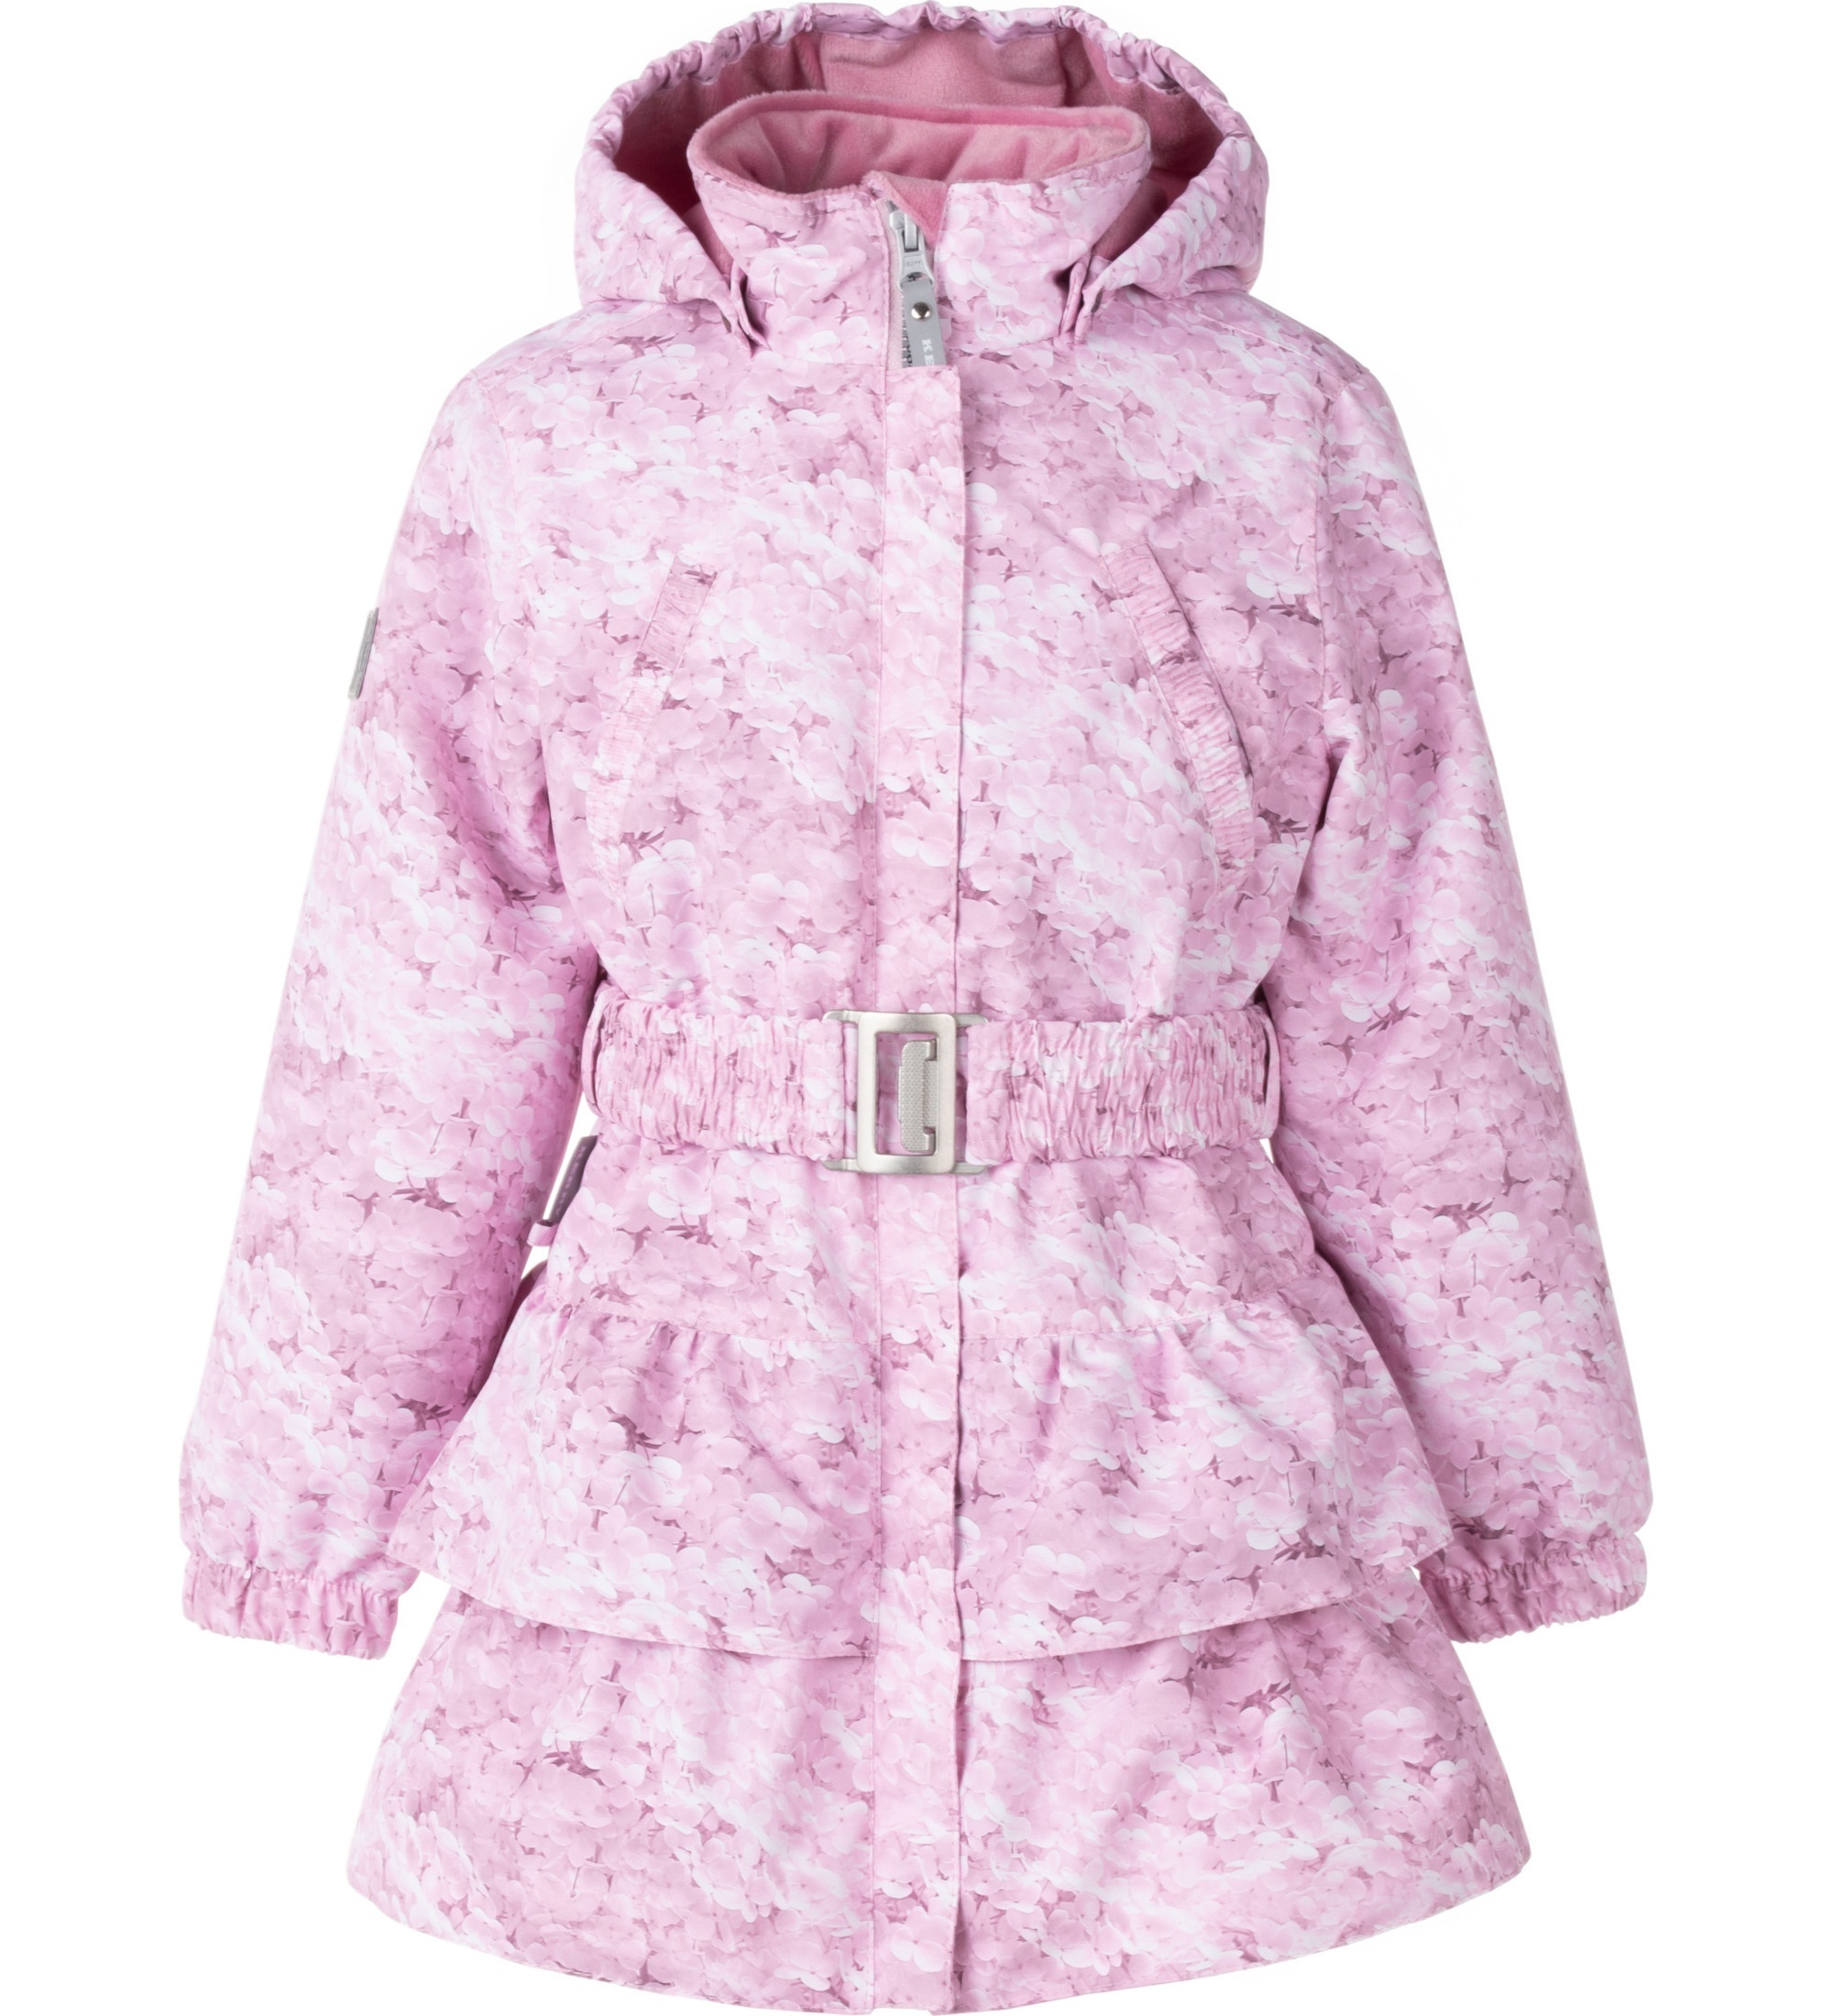 Пальто детское KERRY POLLY, розовый принт, 116